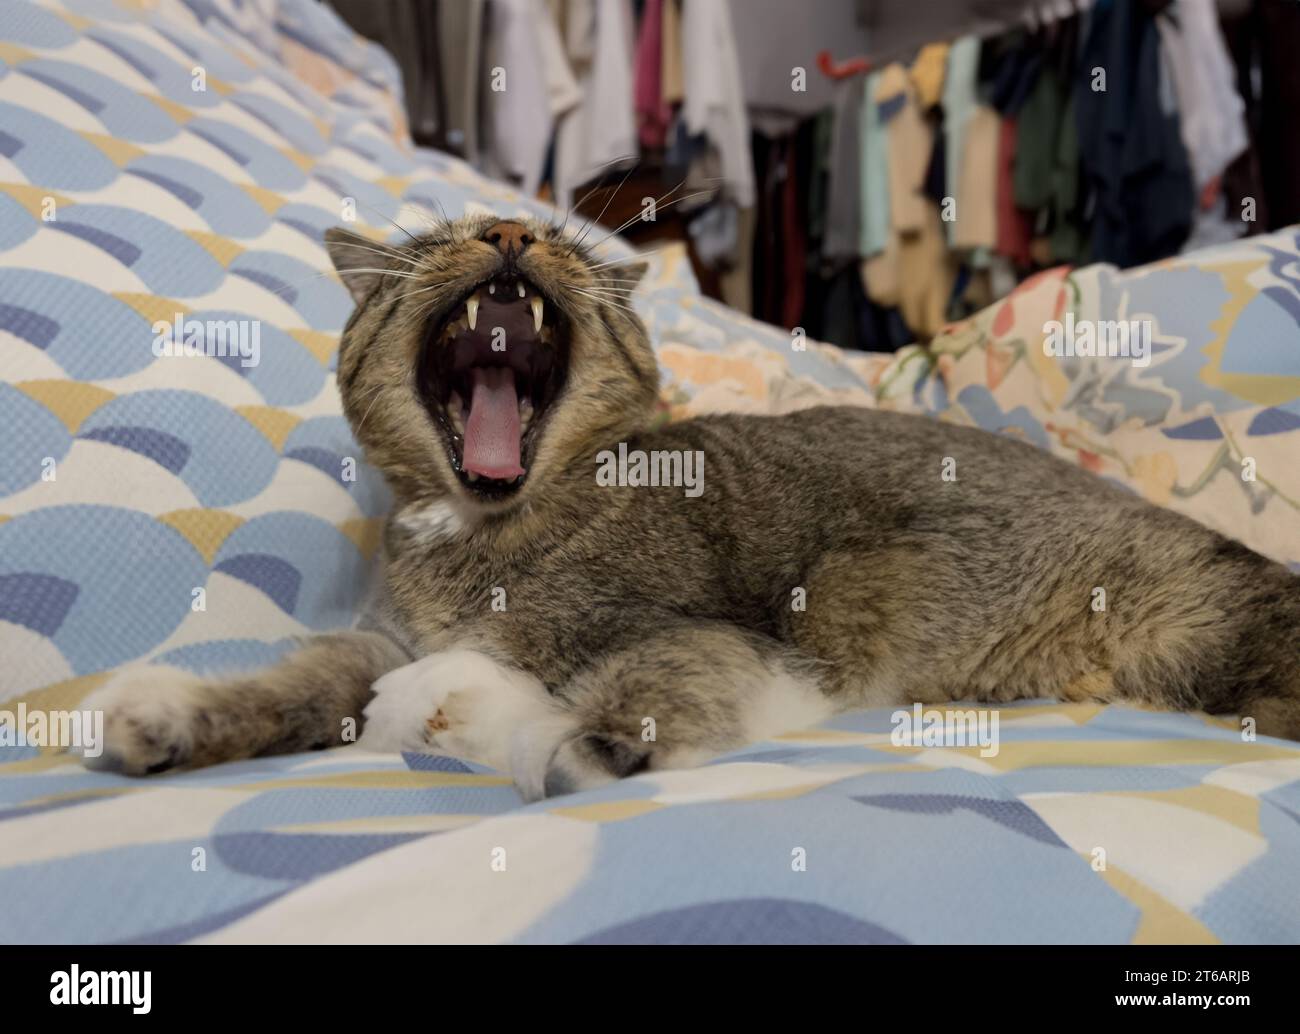 bored cat yawning Stock Photo